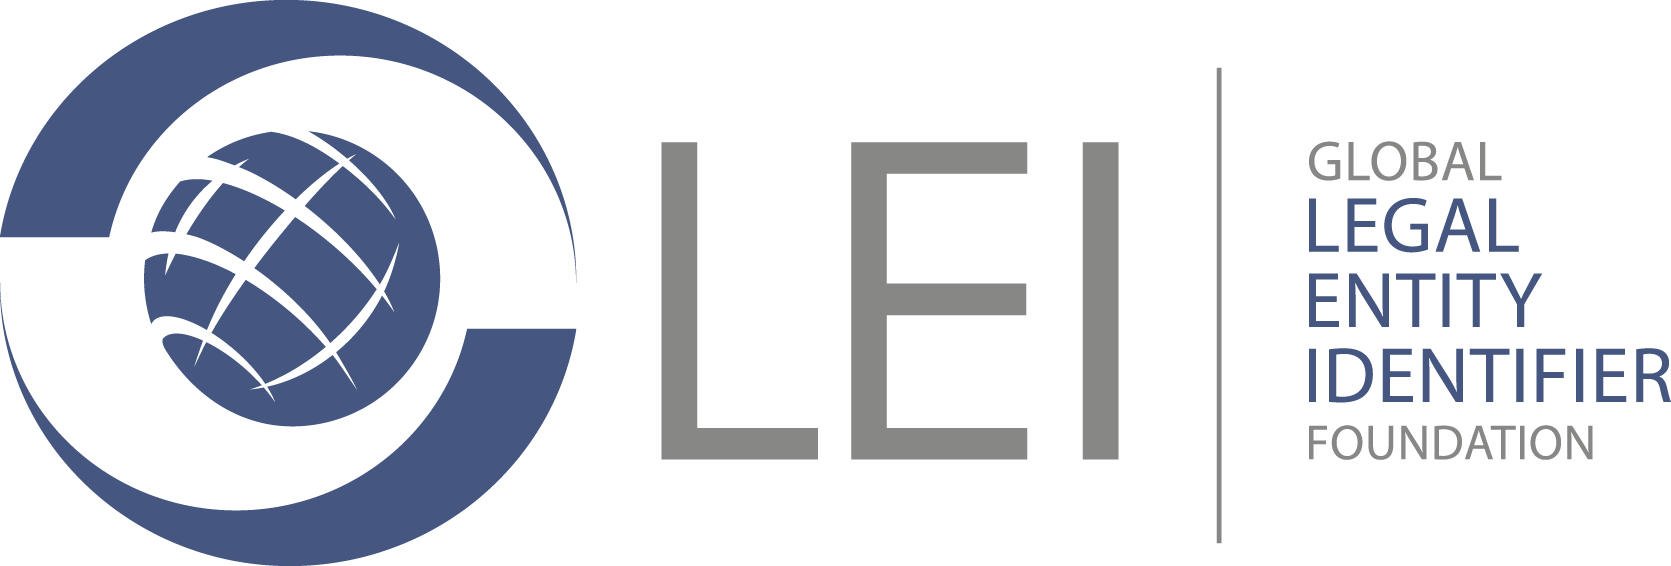 gleif-logo-full